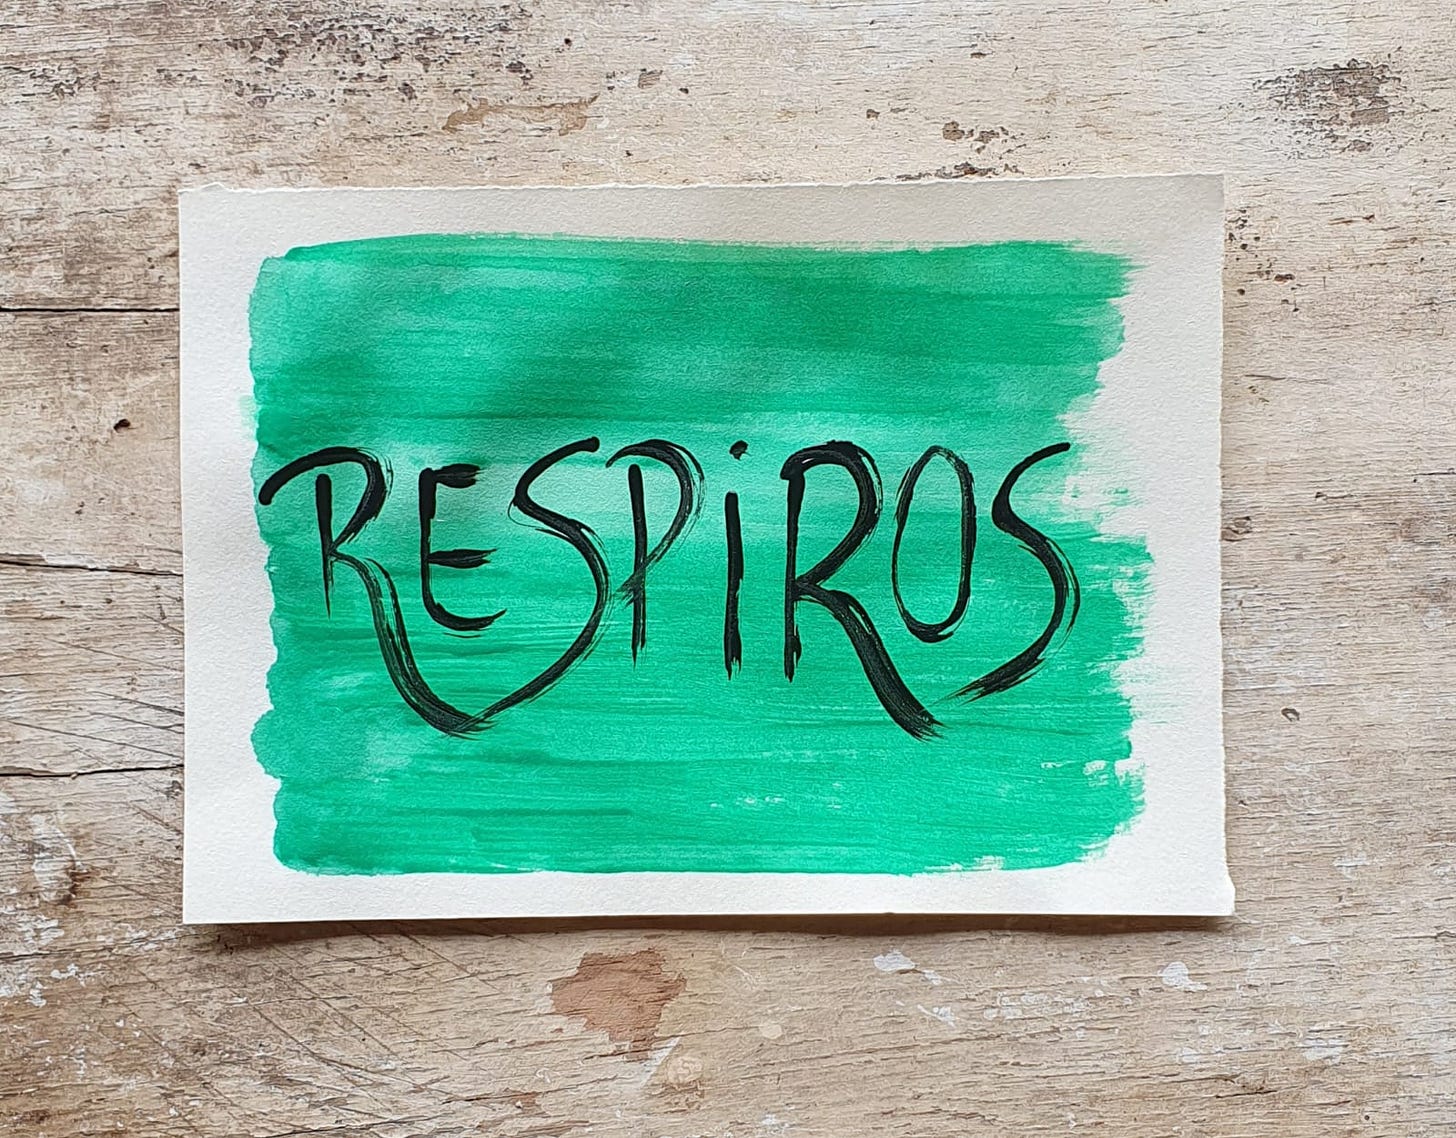 Fotografia de um papel pintado de verde sobre um fundo de madera com o escrito "Respiros"